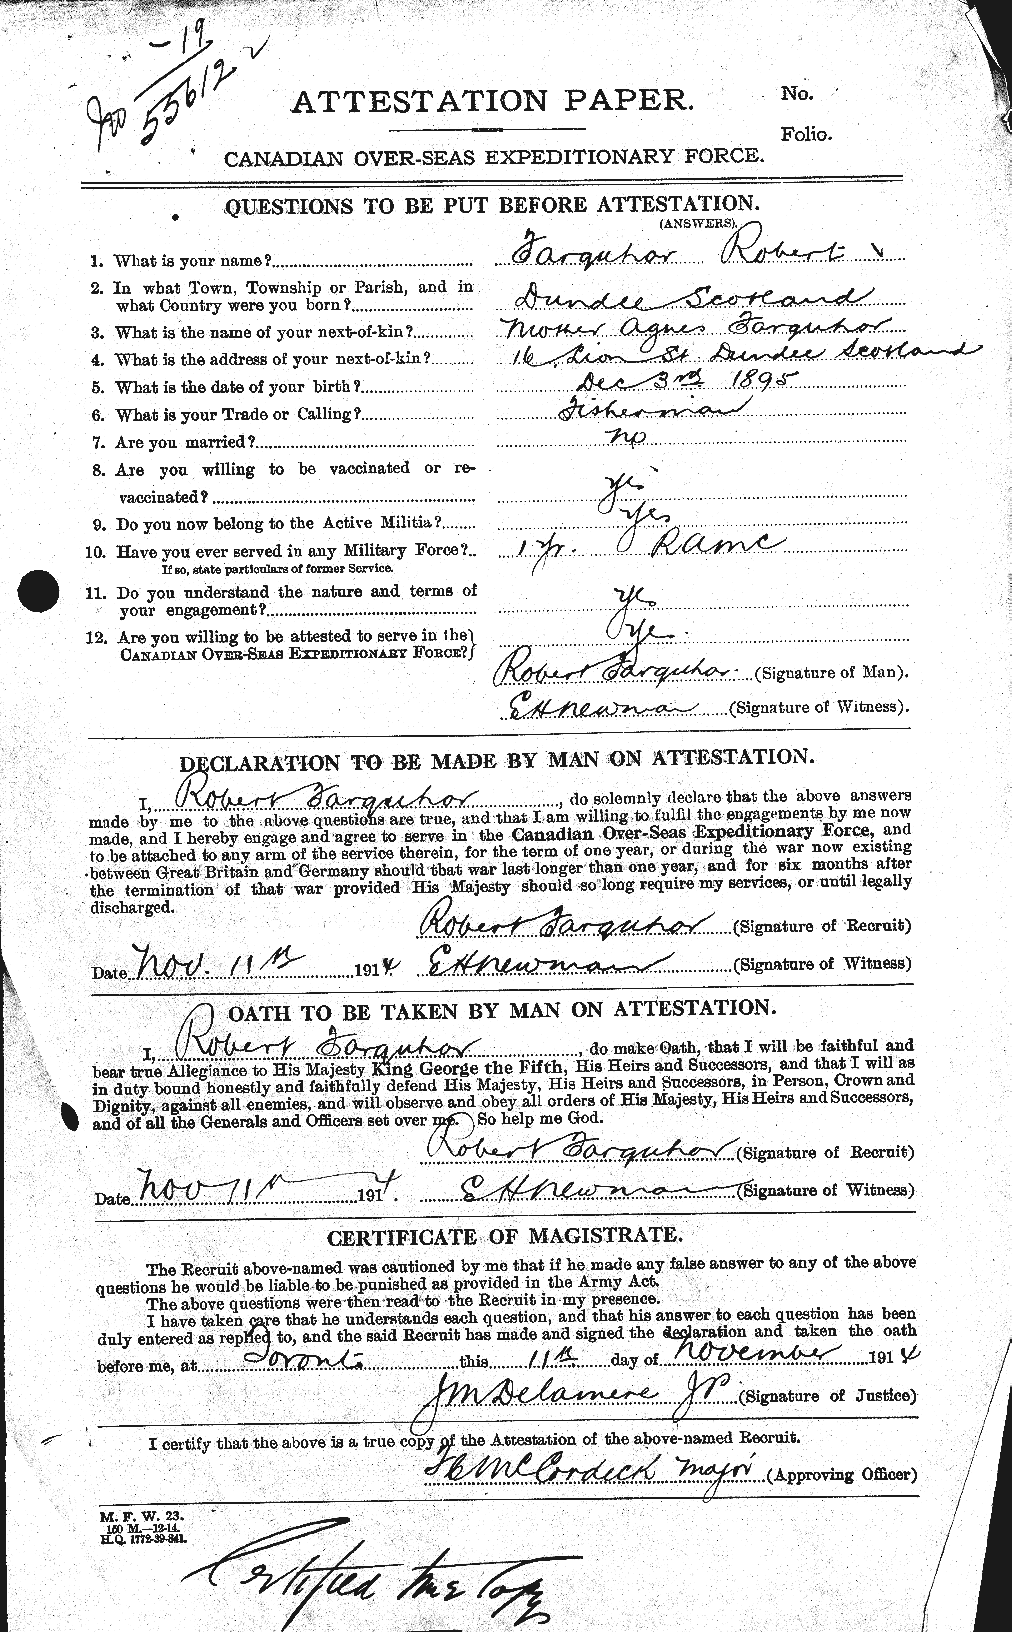 Dossiers du Personnel de la Première Guerre mondiale - CEC 318794a